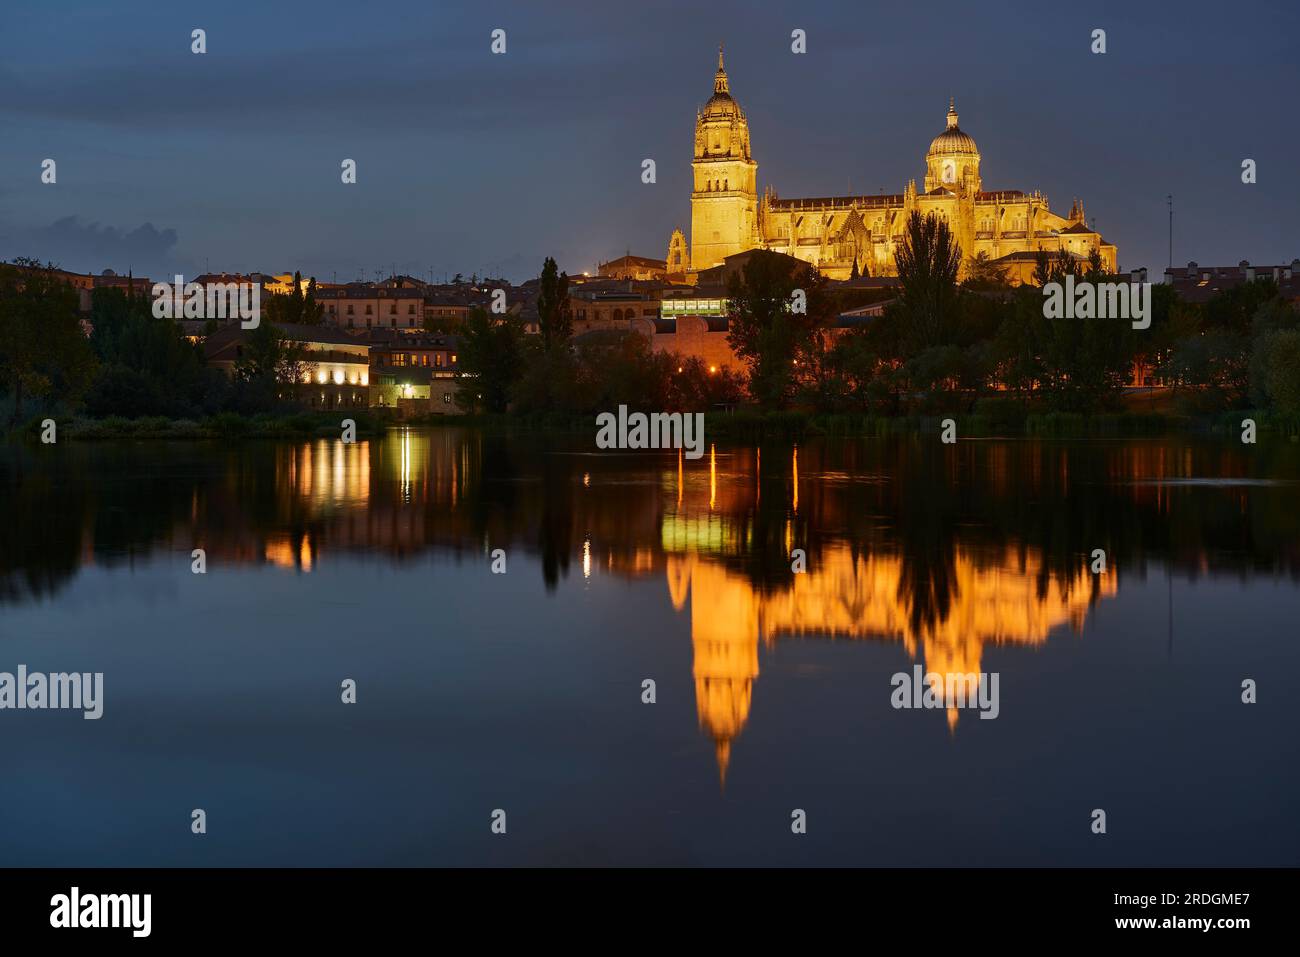 Kathedrale von Salamanca bei Nacht Blick vom Fluss Tormes, Salamanca City, Spanien, Europa. Stockfoto